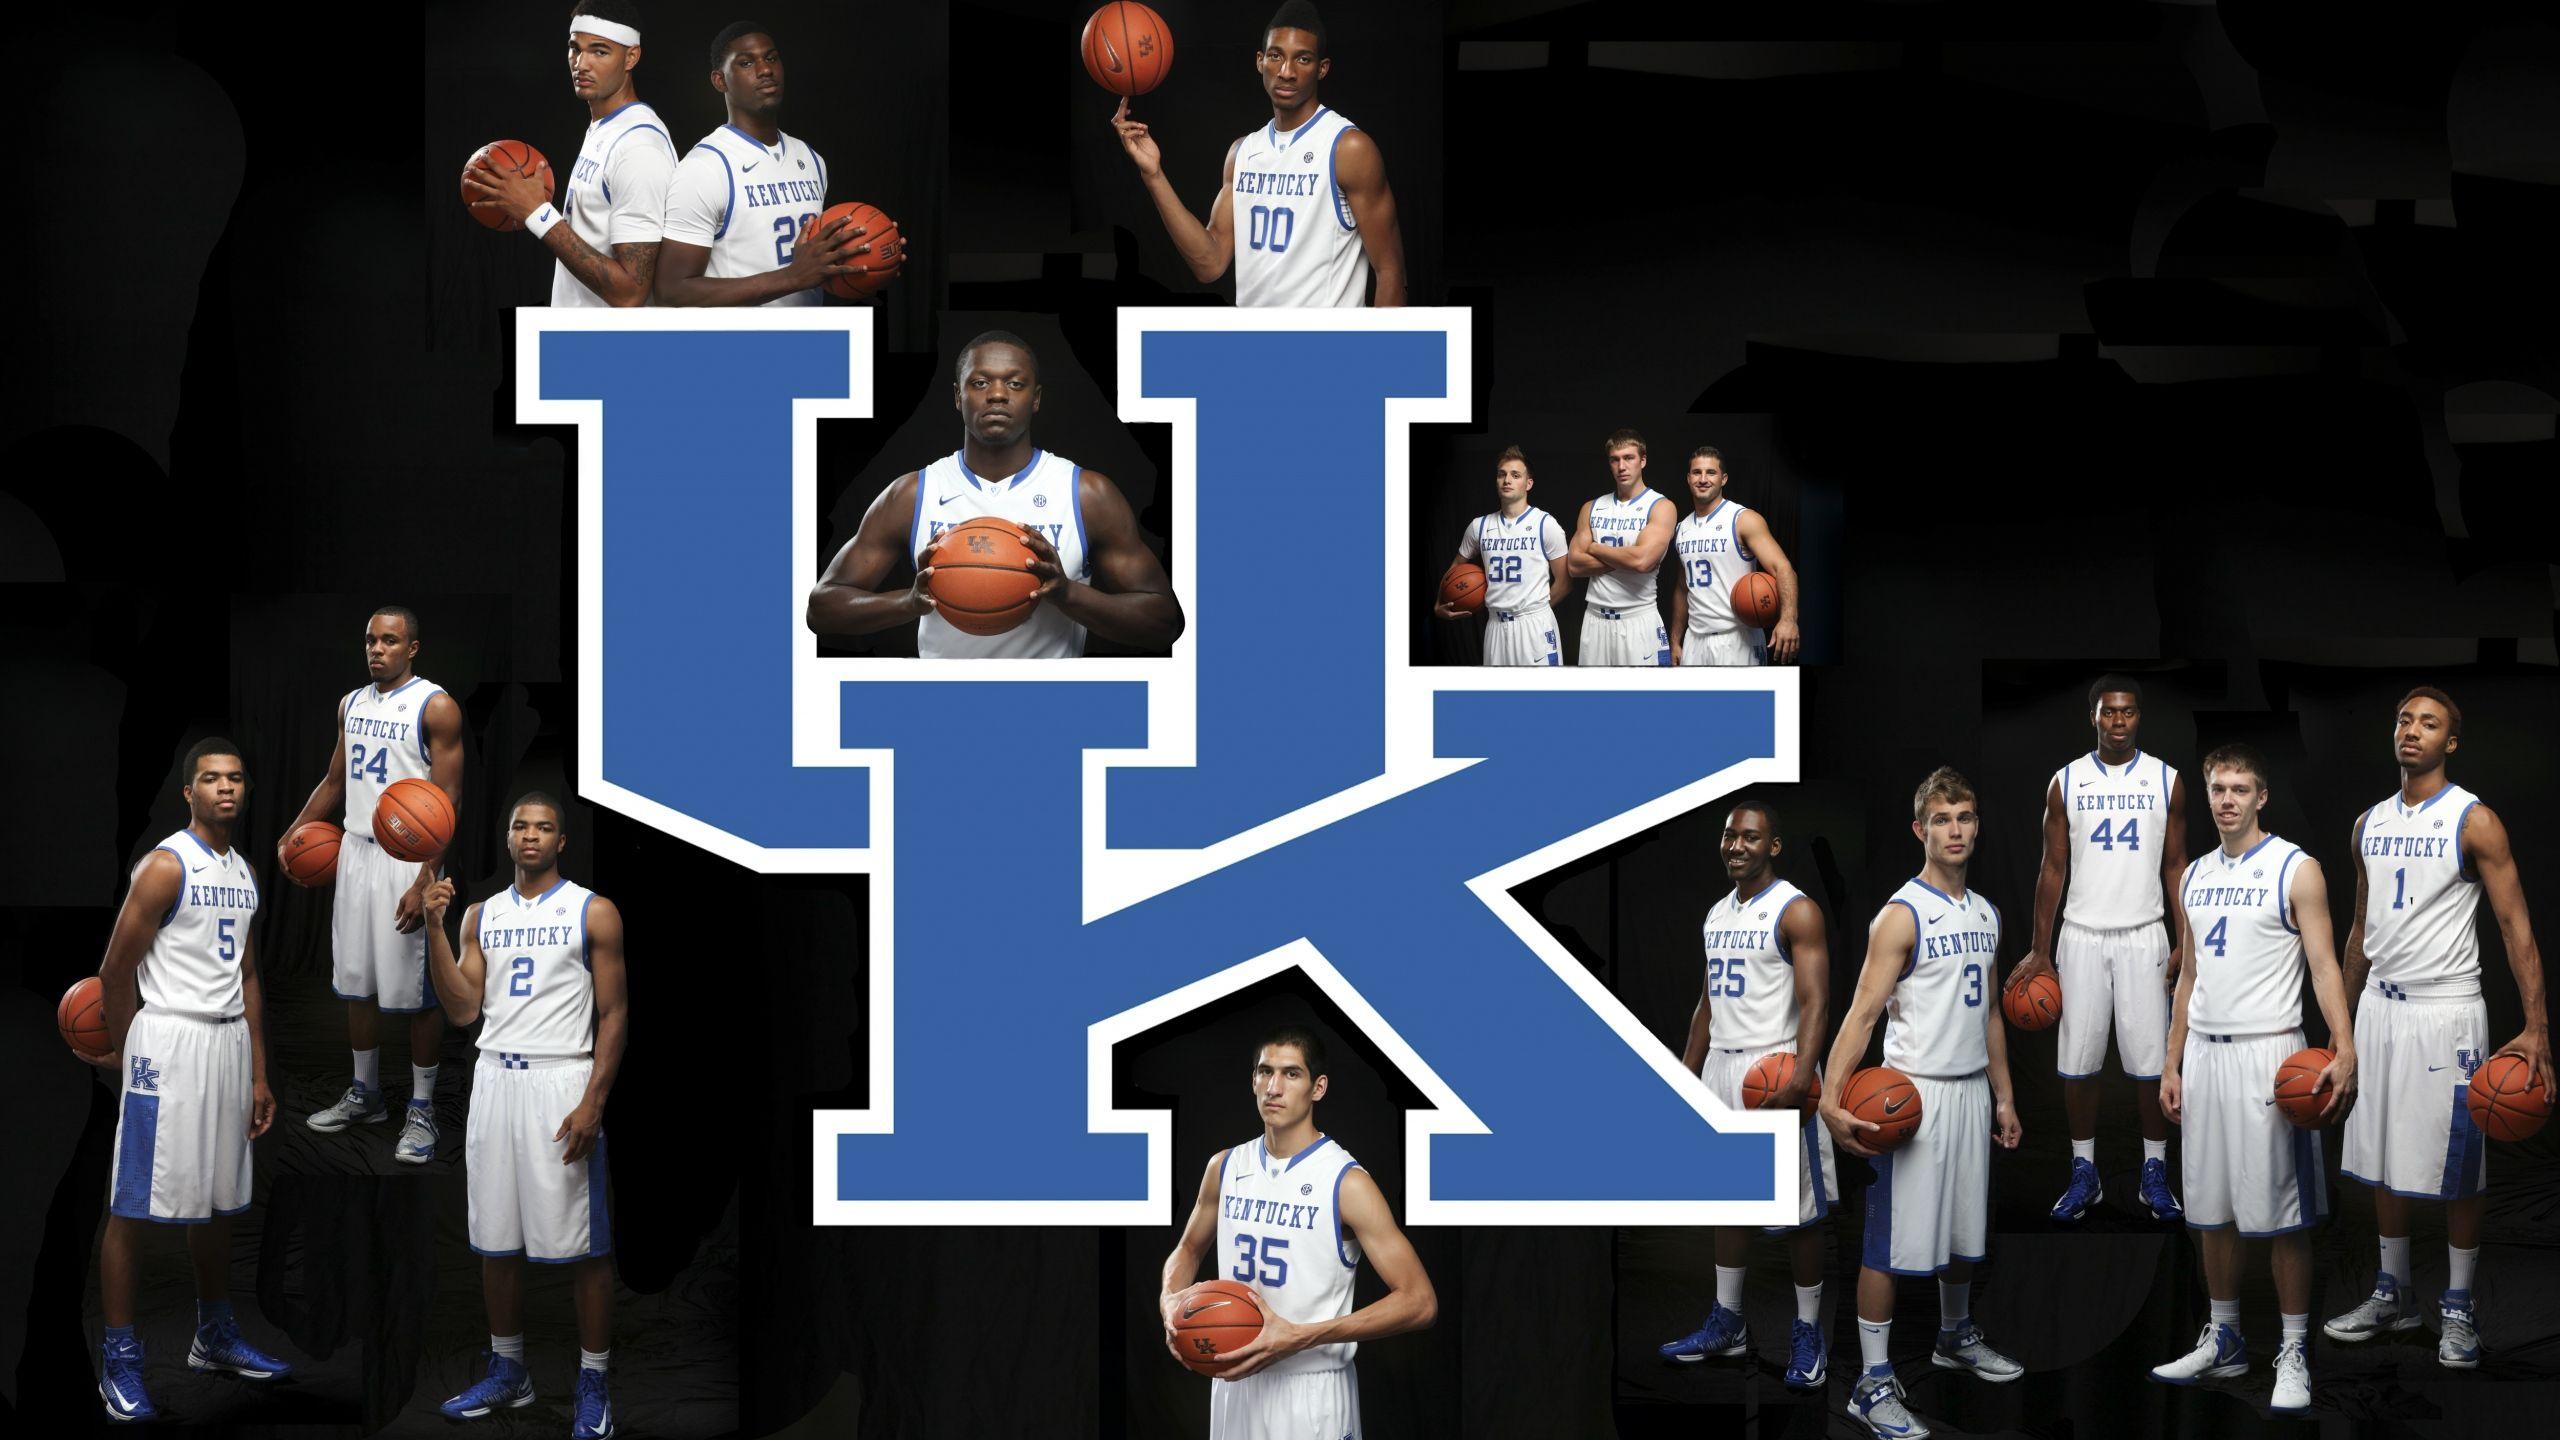 Download Wallpaper 2560x1440 Kentucky basketball, Kentucky